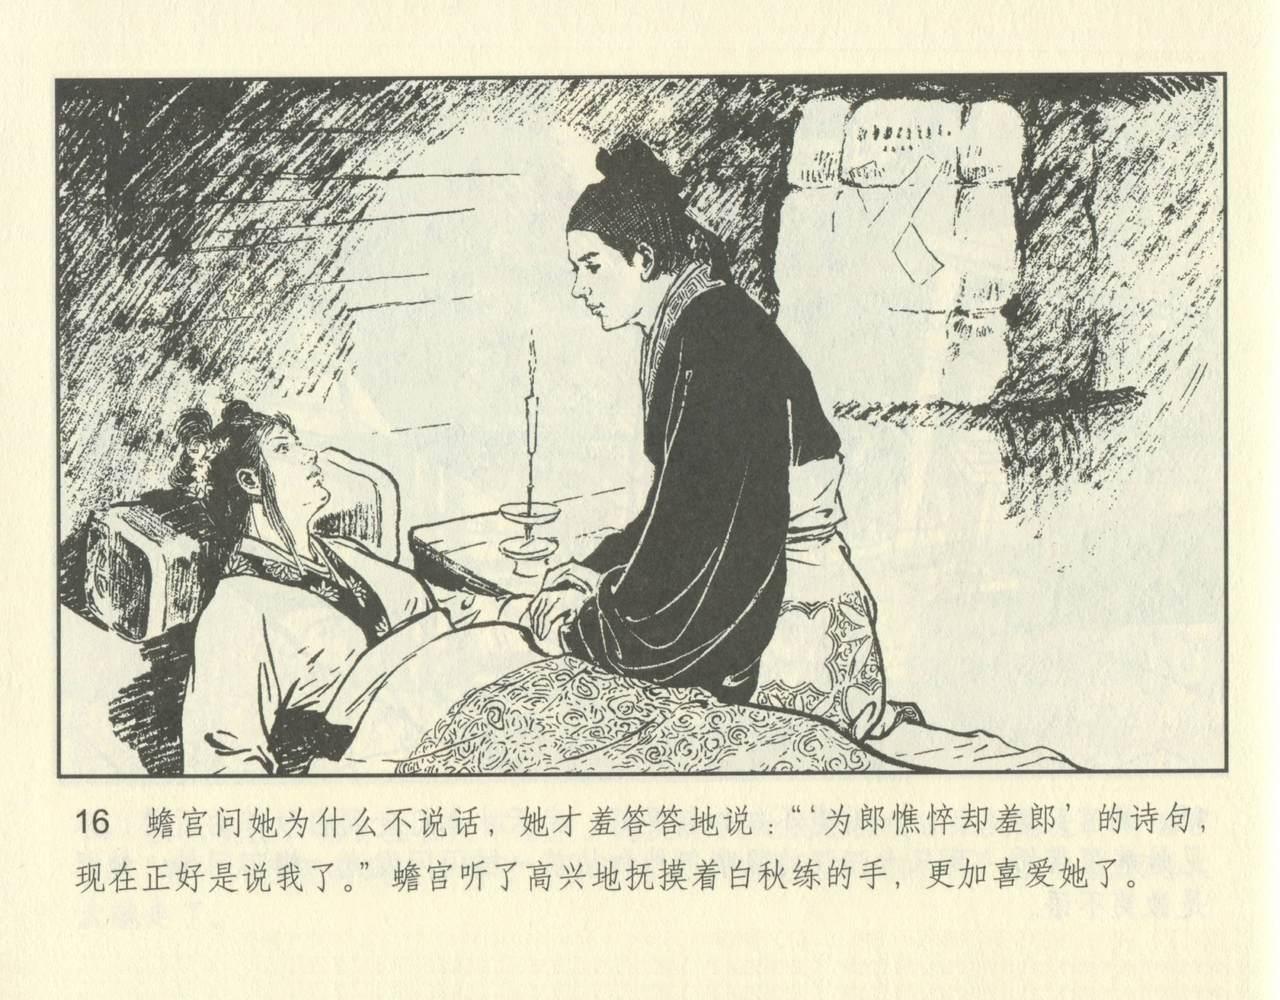 聊斋志异 张玮等绘 天津人民美术出版社 卷二十一 ~ 三十 65